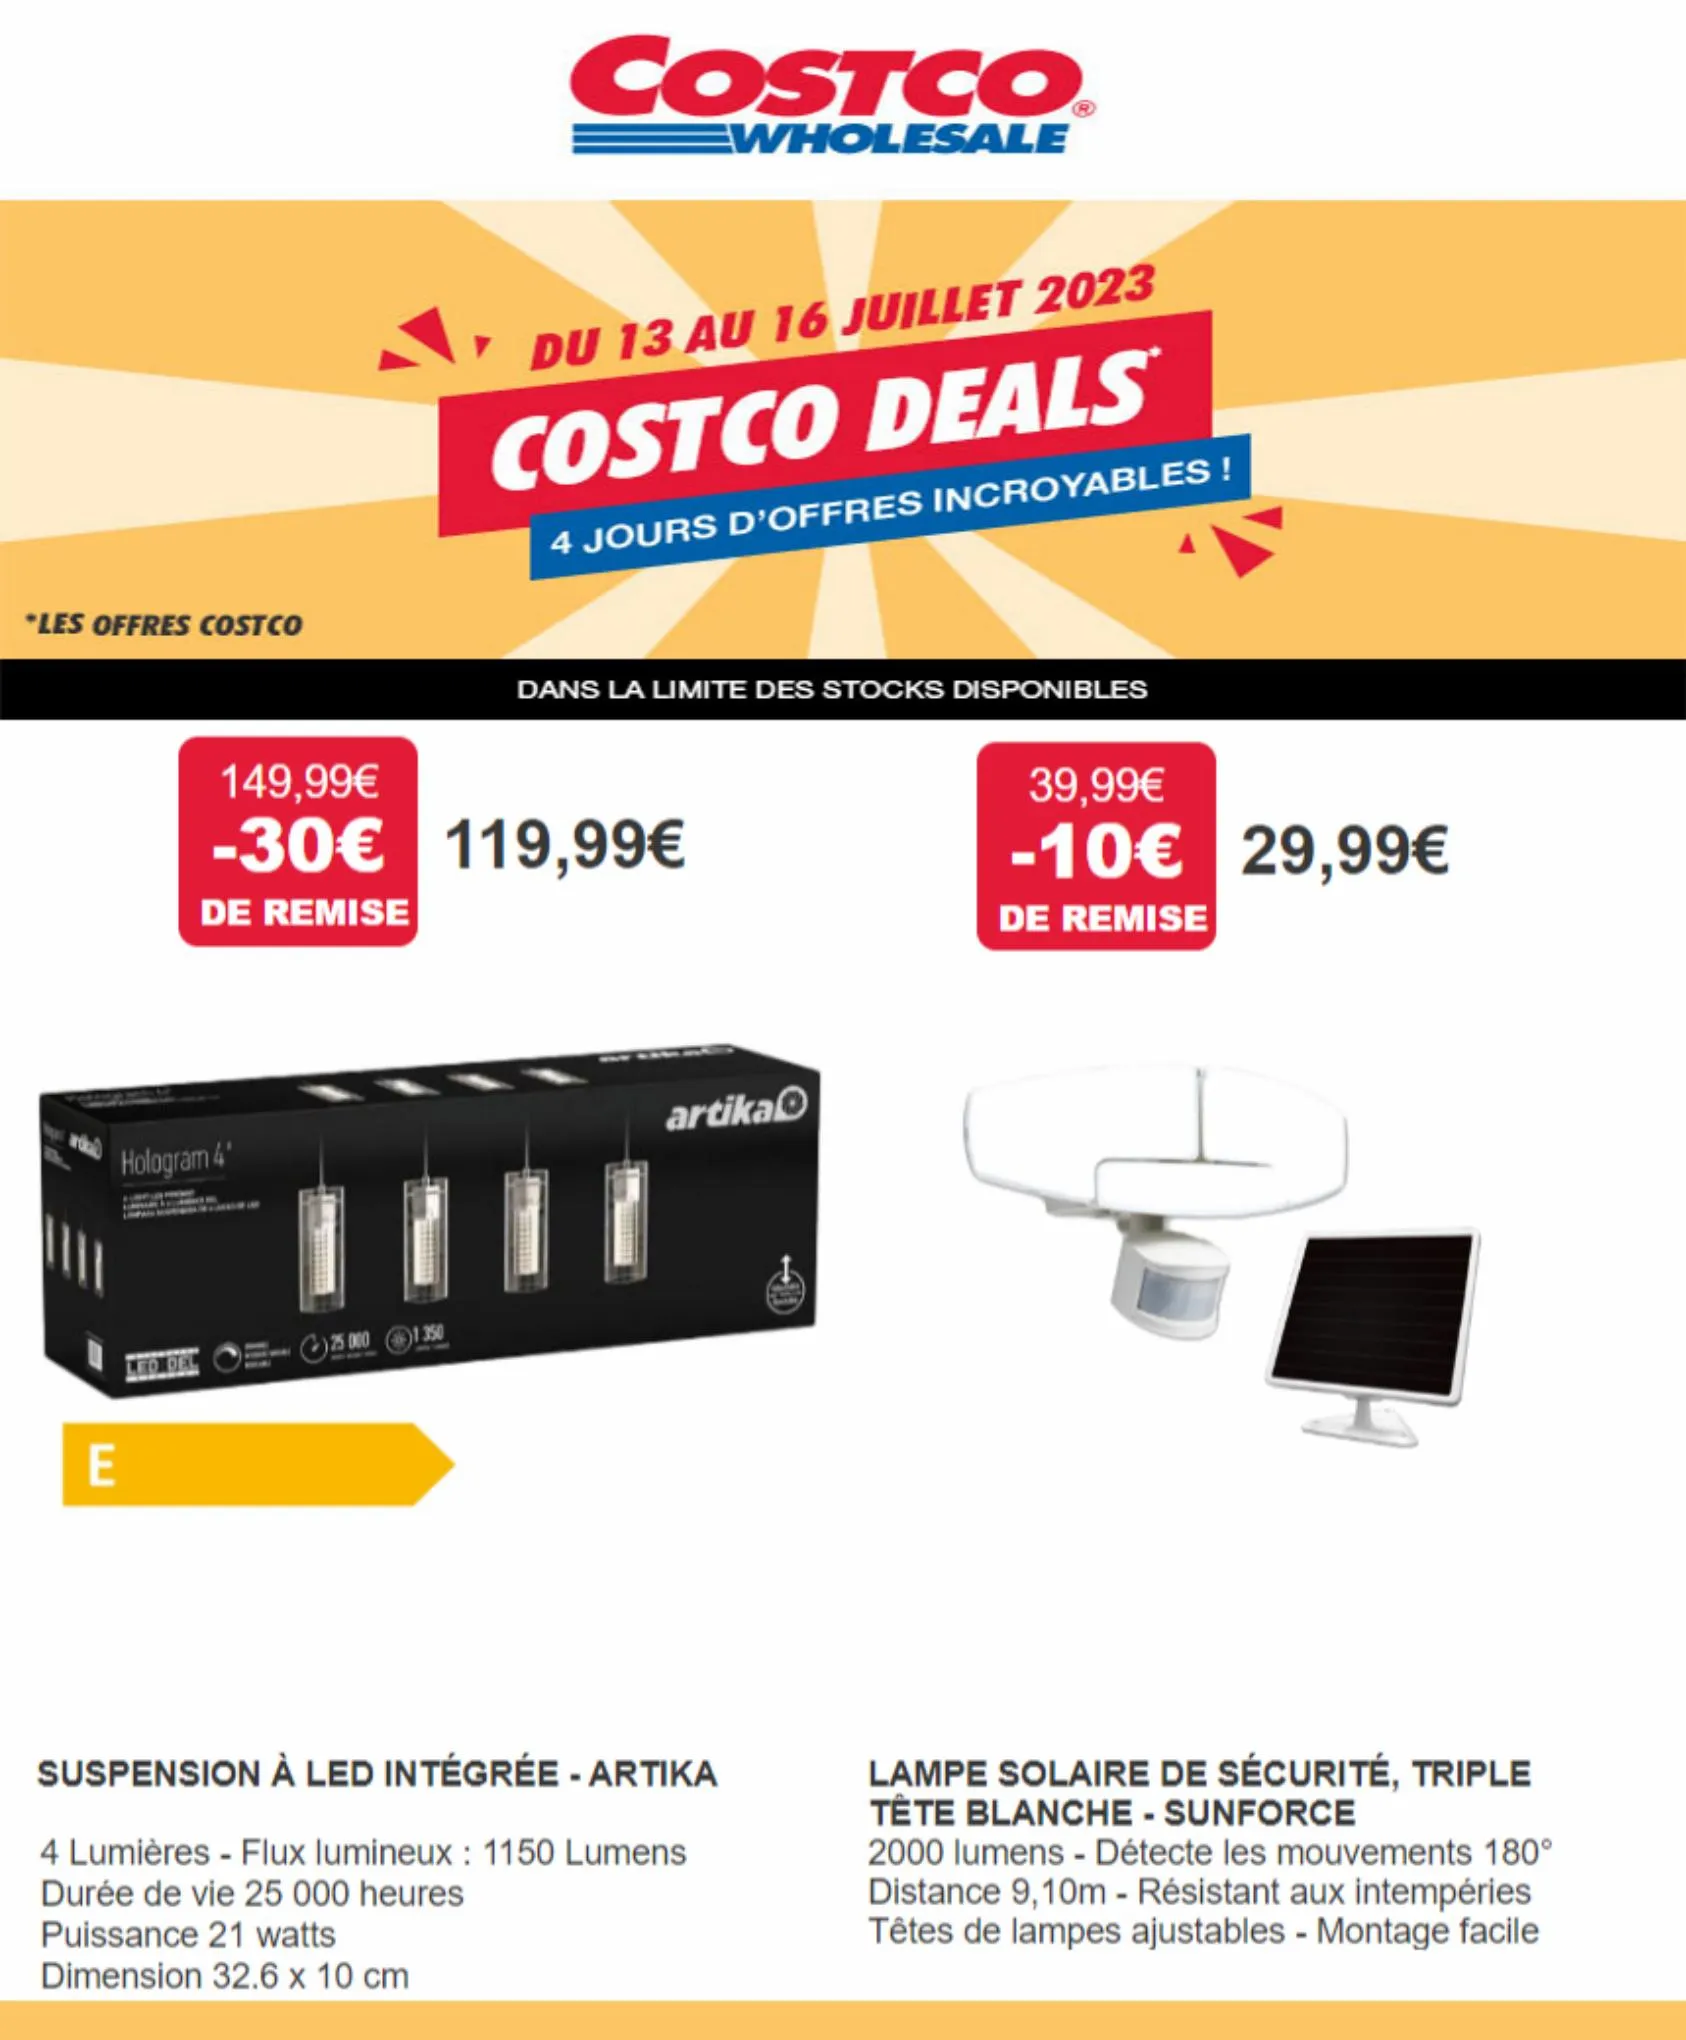 Catalogue Costco Deals 4 jours D'offres incroyables!, page 00003